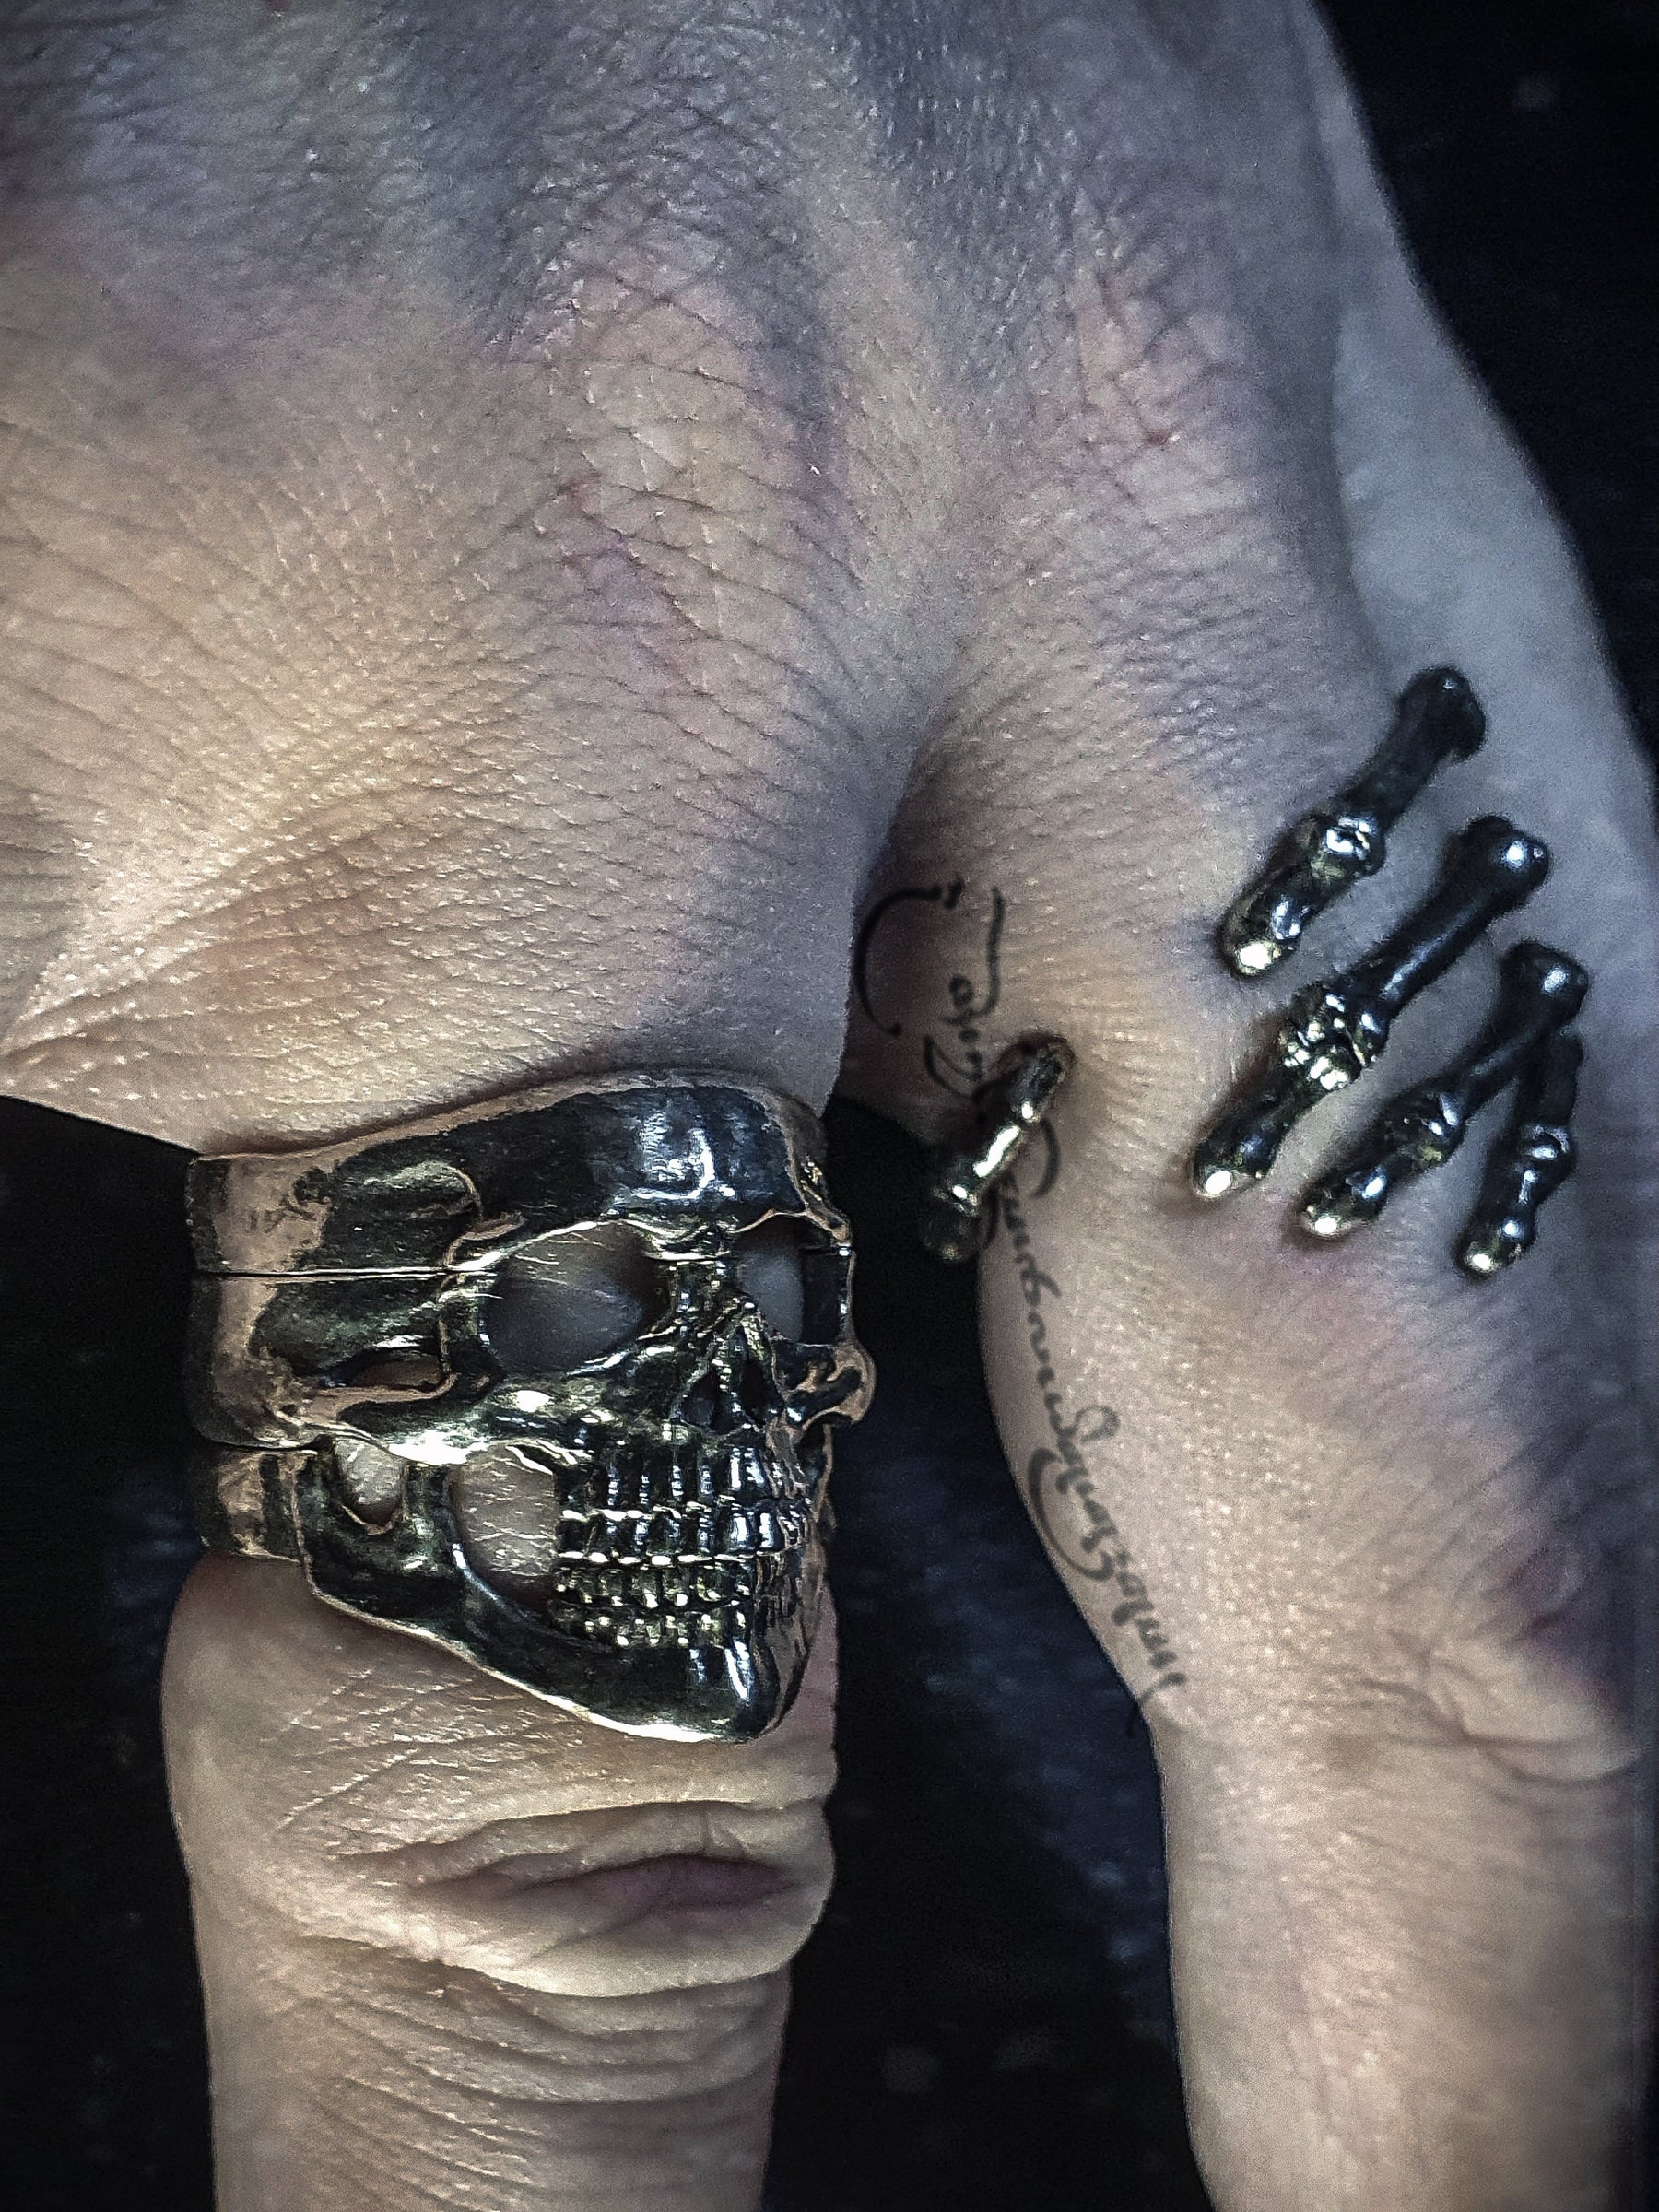 Skeleton Hand Stainless Steel Ring Wearing Little Skull Rings